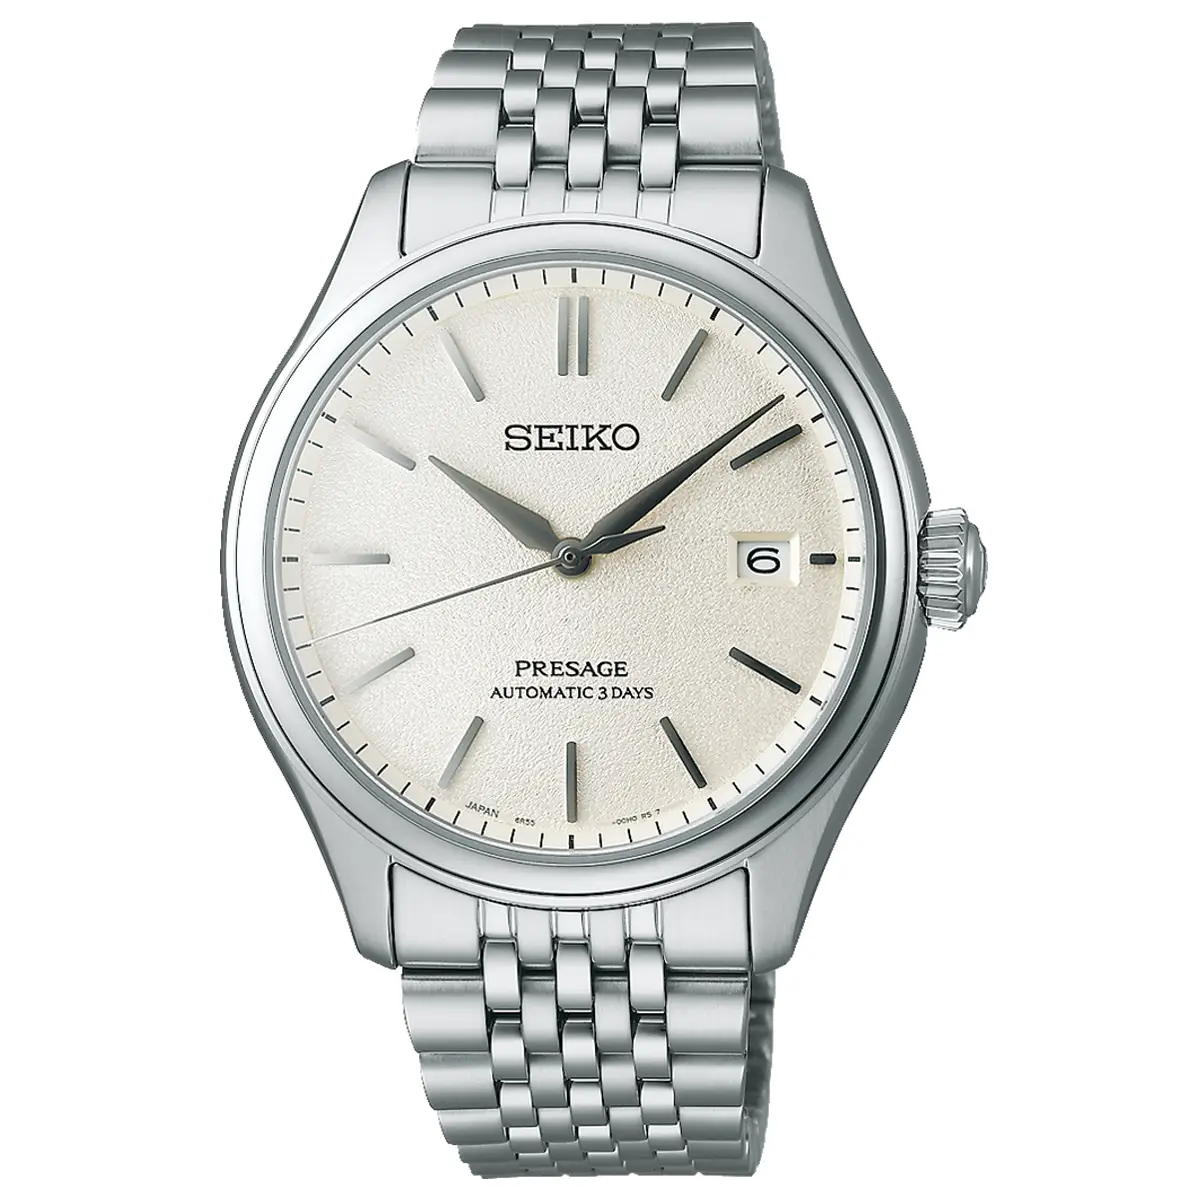 Đồng hồ Seiko Presage Classic Series “Shiroiro” SARX121 (SPB463) với mặt số màu trắng. Dây đeo bằng thép. Thân vỏ bằng thép.